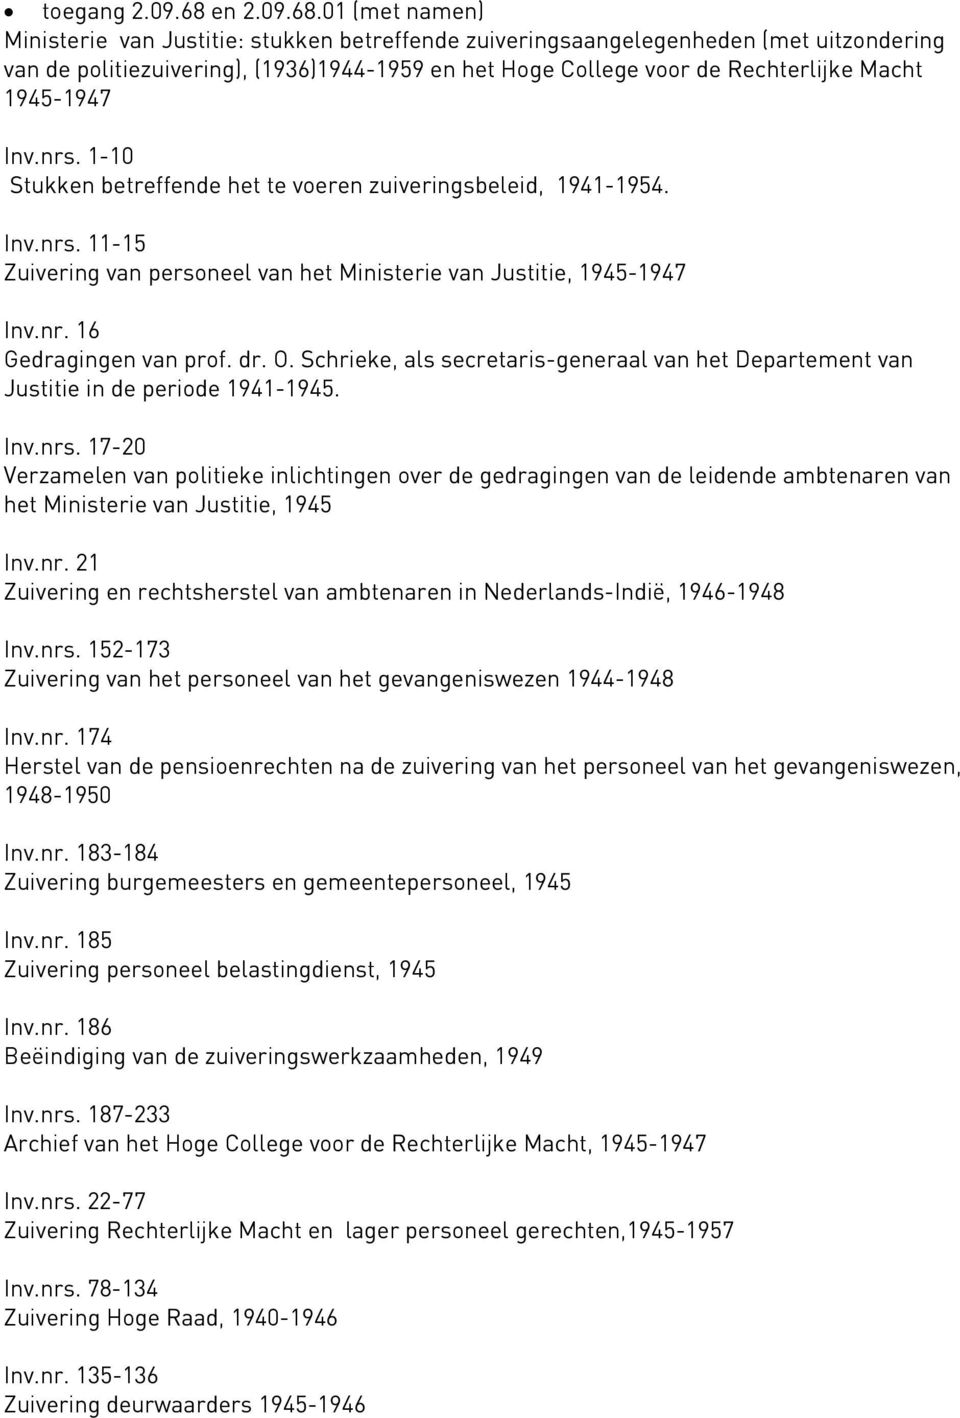 01 (met namen) Ministerie van Justitie: stukken betreffende zuiveringsaangelegenheden (met uitzondering van de politiezuivering), (1936)1944-1959 en het Hoge College voor de Rechterlijke Macht